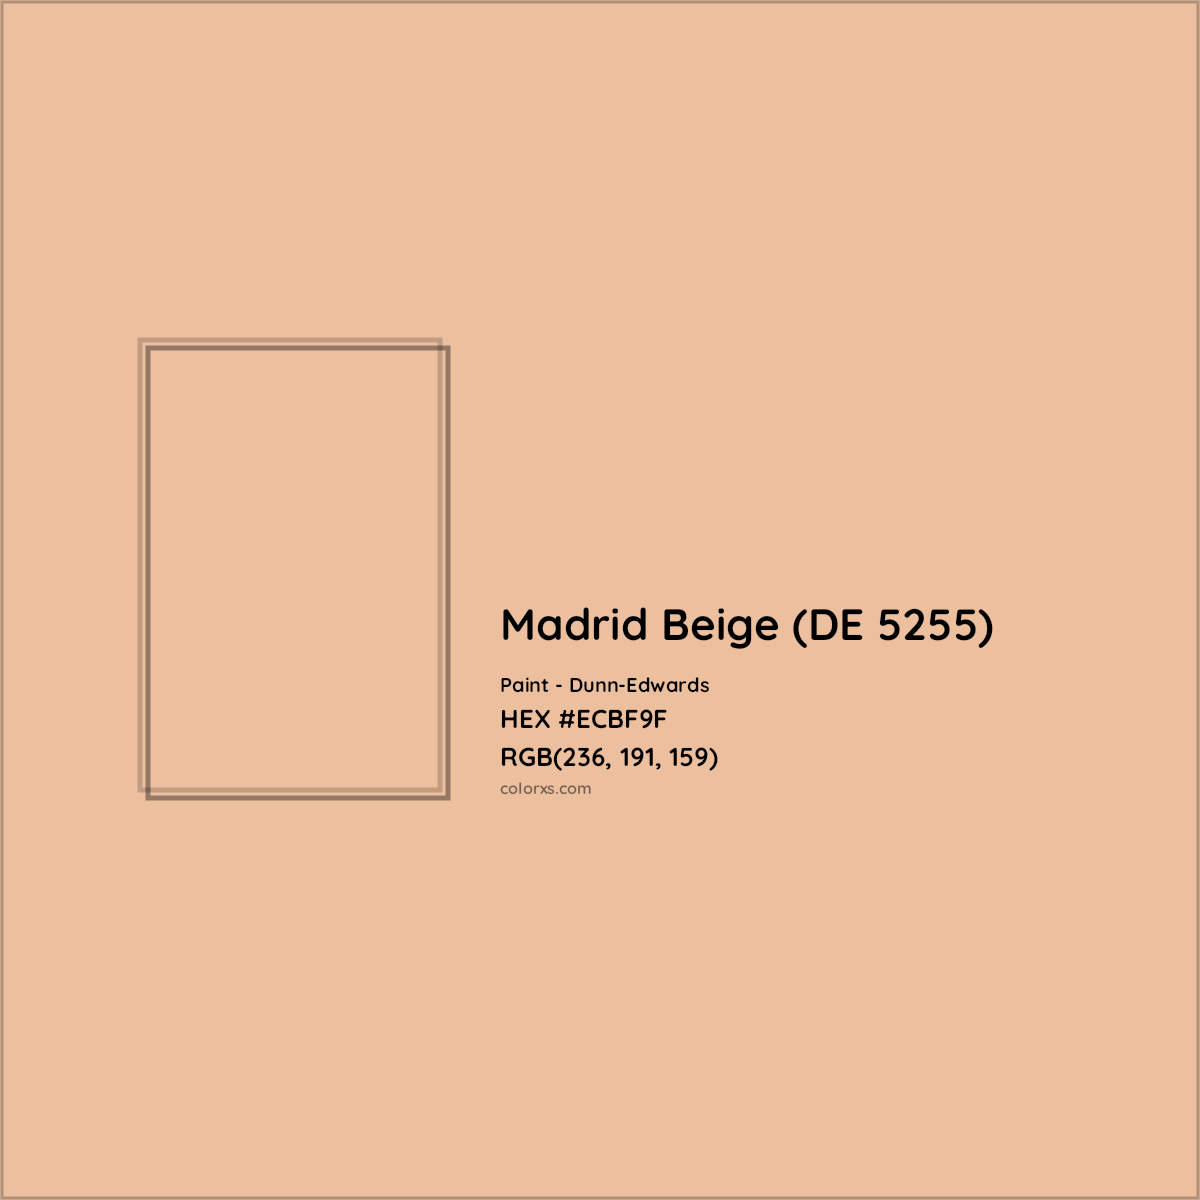 HEX #ECBF9F Madrid Beige (DE 5255) Paint Dunn-Edwards - Color Code